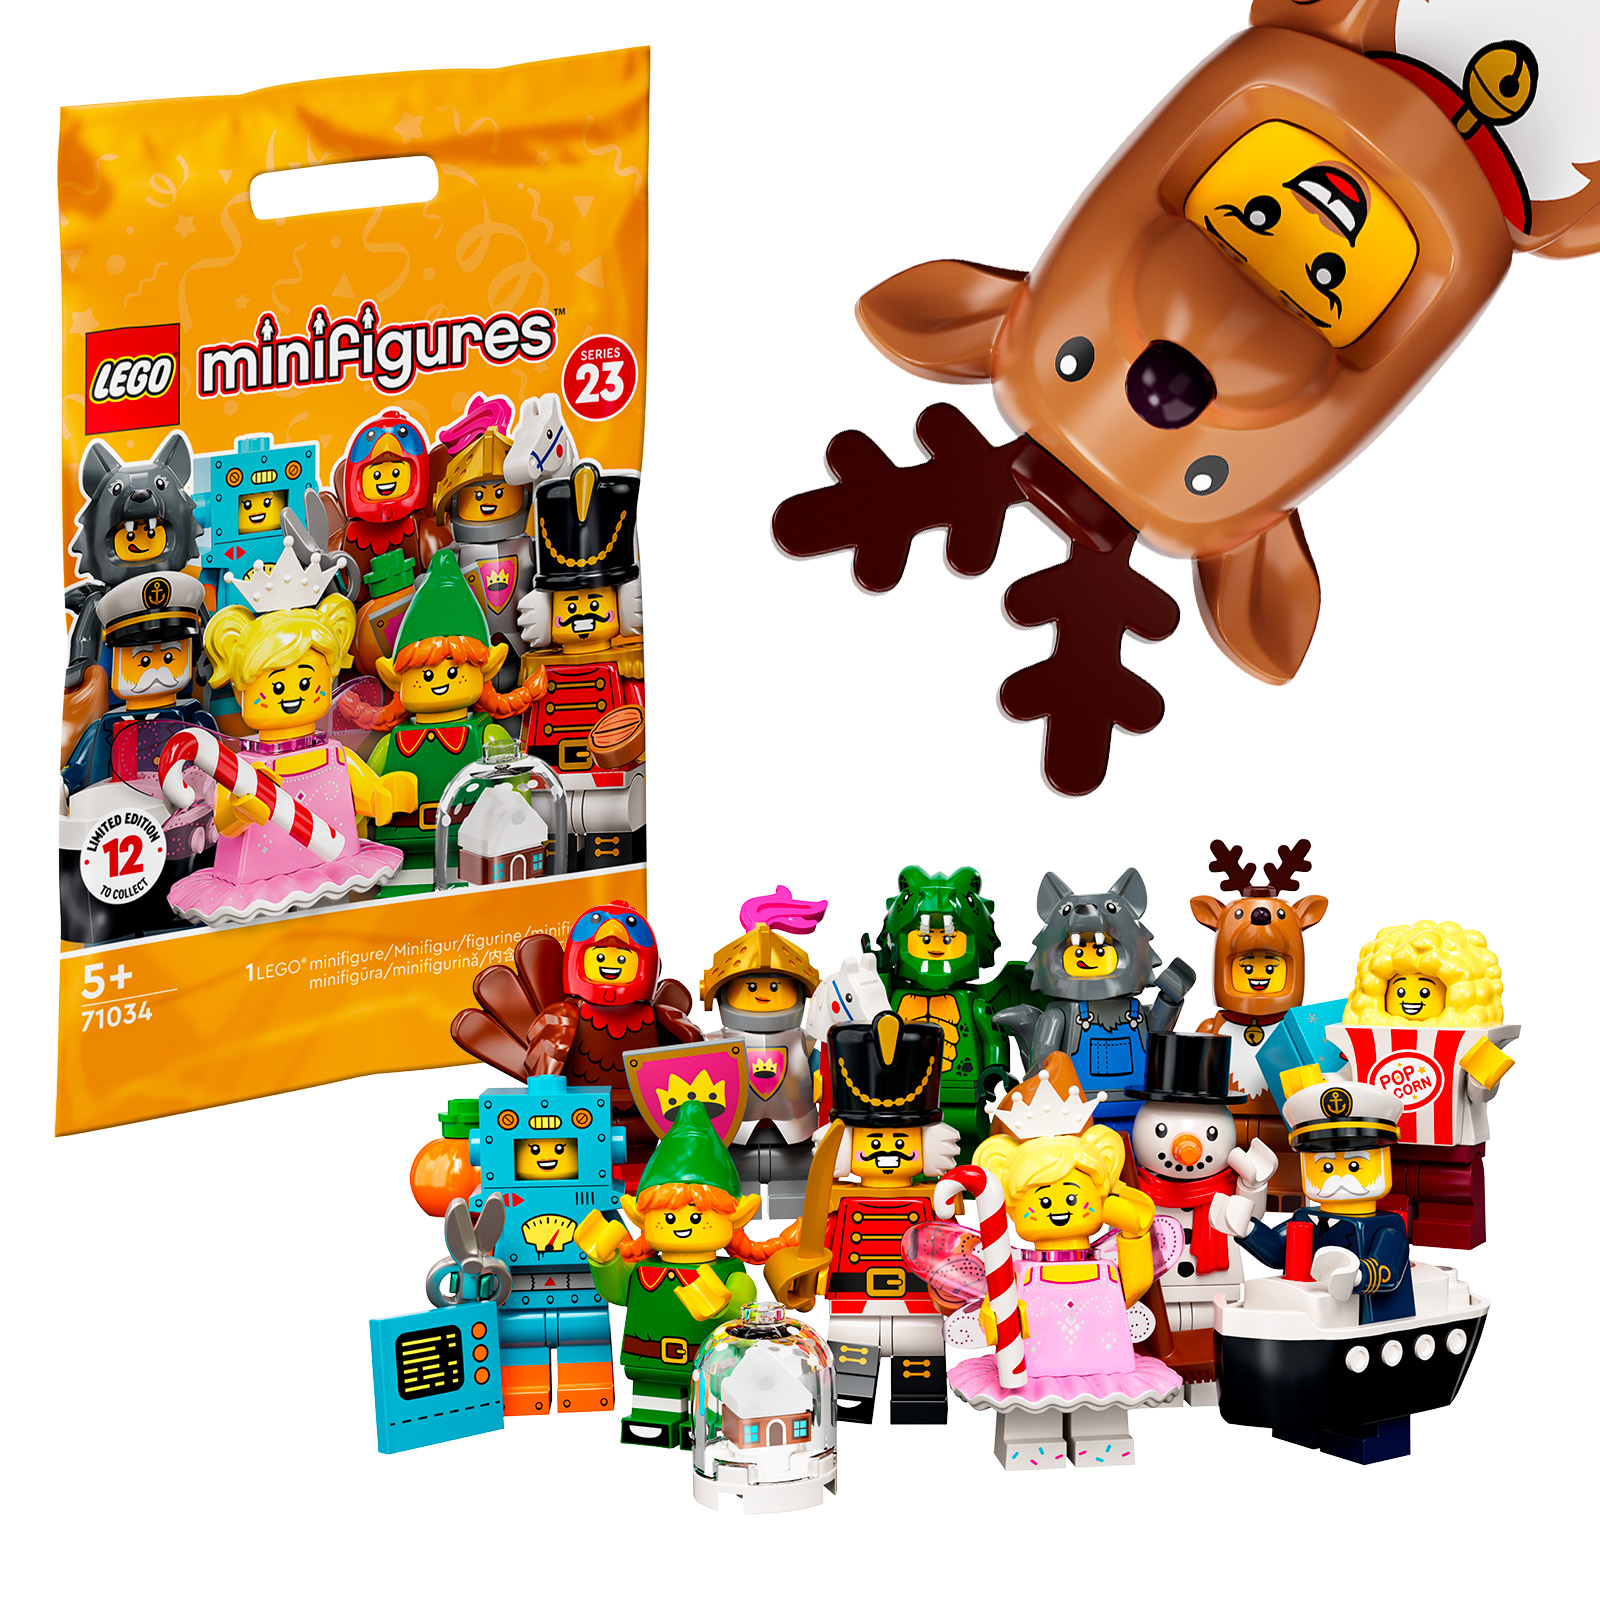 लेगो 71034 संग्रहणीय मिनीफिगर्स श्रृंखला 23: सभी पात्र दुकान पर हैं